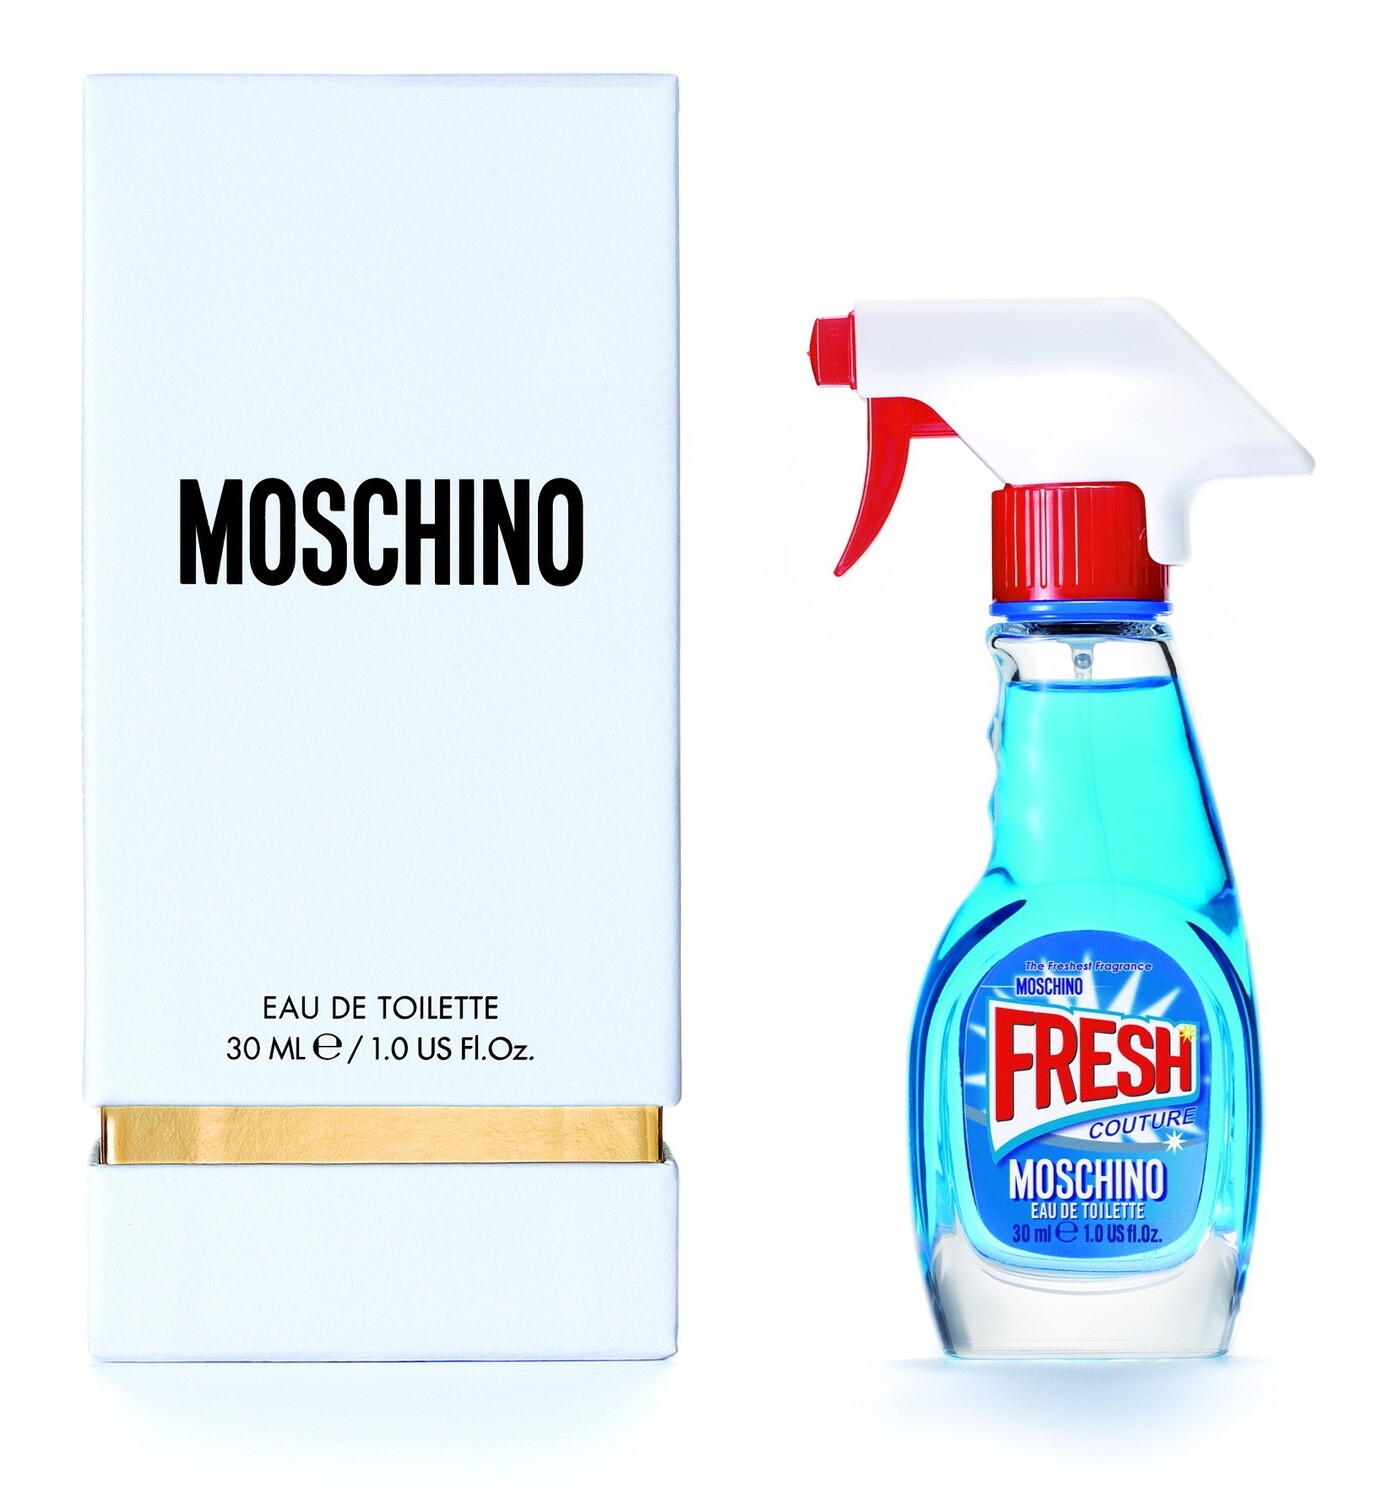 Fresh - Moschino